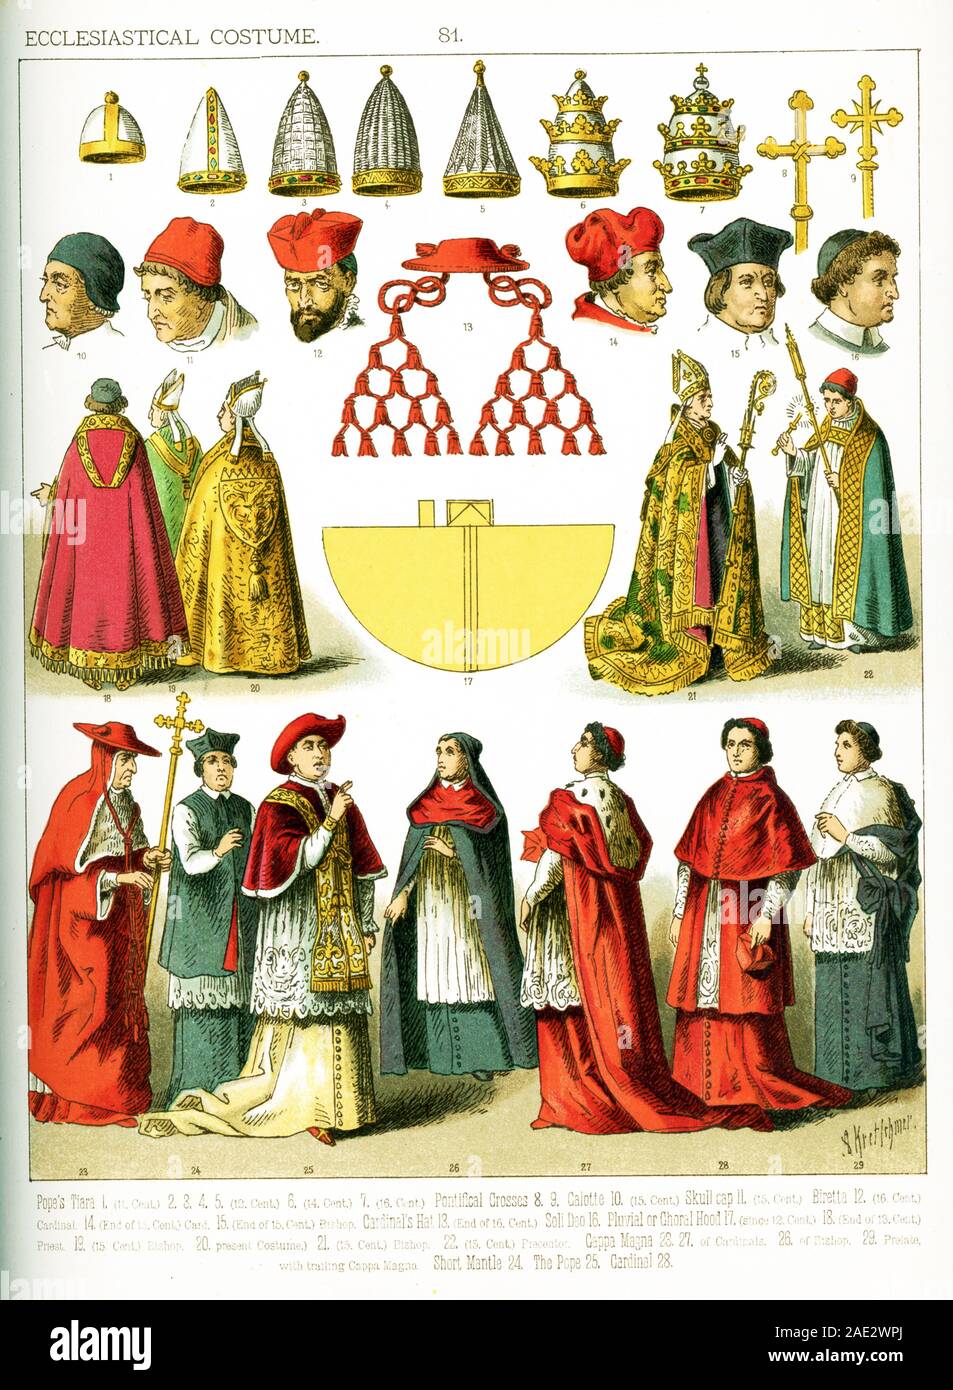 Die Bilder hier sind alle mit kirchlichen Kostüm, aus dem 11. Jahrhundert bis ins 19. Jahrhundert. Sie sind von links nach rechts, oben nach unten: ein Papst tiara aus dem 11. Jahrhundert, vier des Papstes tiaras aus dem 12. Jahrhundert, ein Papst tiara aus dem 14. Jahrhundert, ein Papst tiara aus dem 16. Jahrhundert, zwei Päpstlichen Kreuze, eine Kalotte aus dem 15. Jahrhundert, einen Totenkopf cap aus dem 15. Jahrhundert, ein birett aus dem 16. Jahrhundert, hat der Kardinal am Ende des 16. Jahrhunderts, ein Kardinal, am Ende des 15. Jahrhunderts, ein Bischof am Ende des 15. Jahrhunderts, Soli Deo, ein PLUVIALE oder choral Haube da t Stockfoto